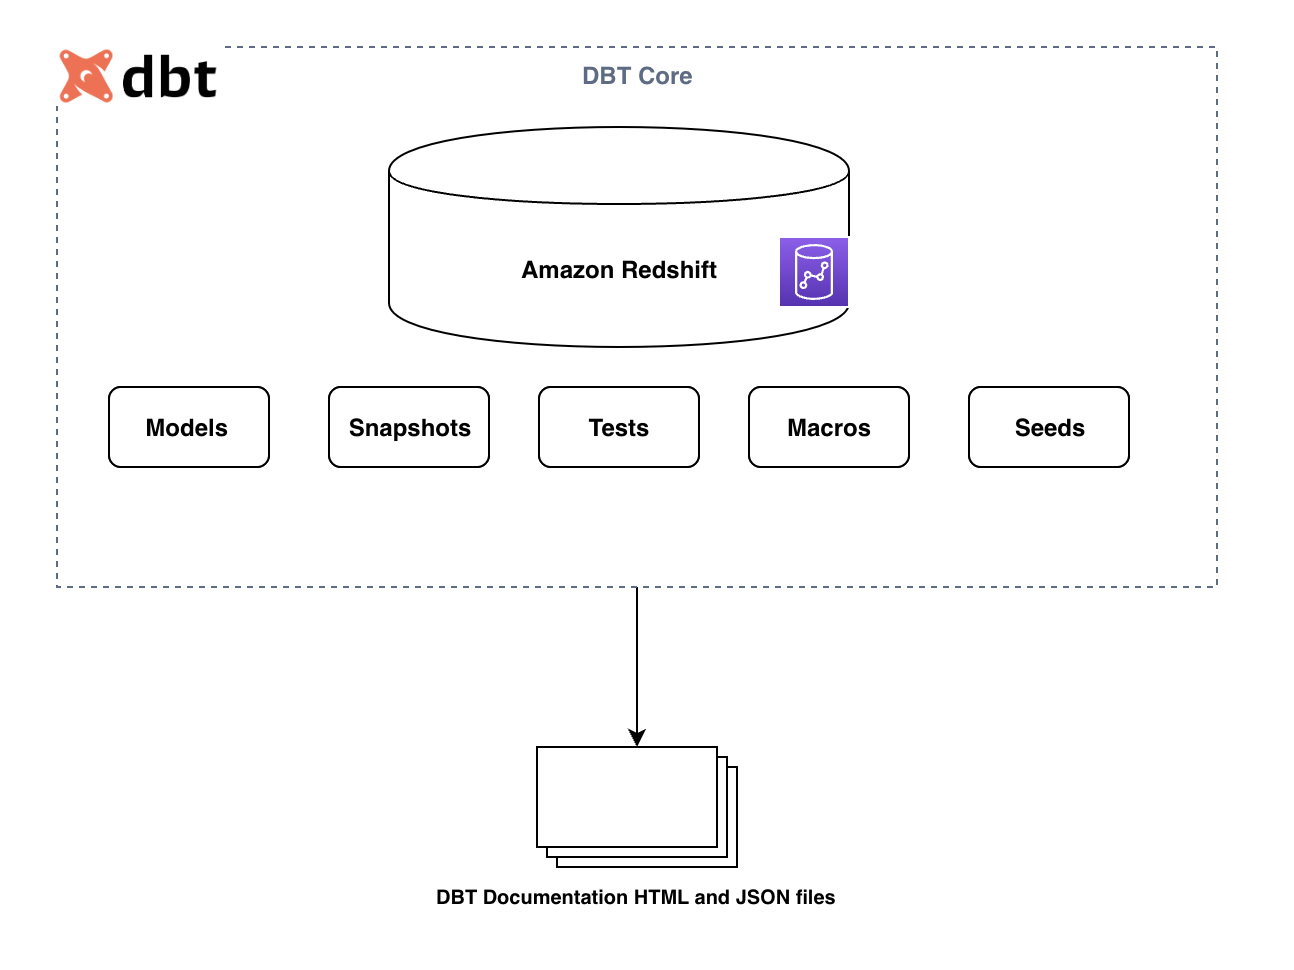 Implémenter une solution d'entreposage de données à l'aide de dbt sur Amazon Redshift | Services Web Amazon